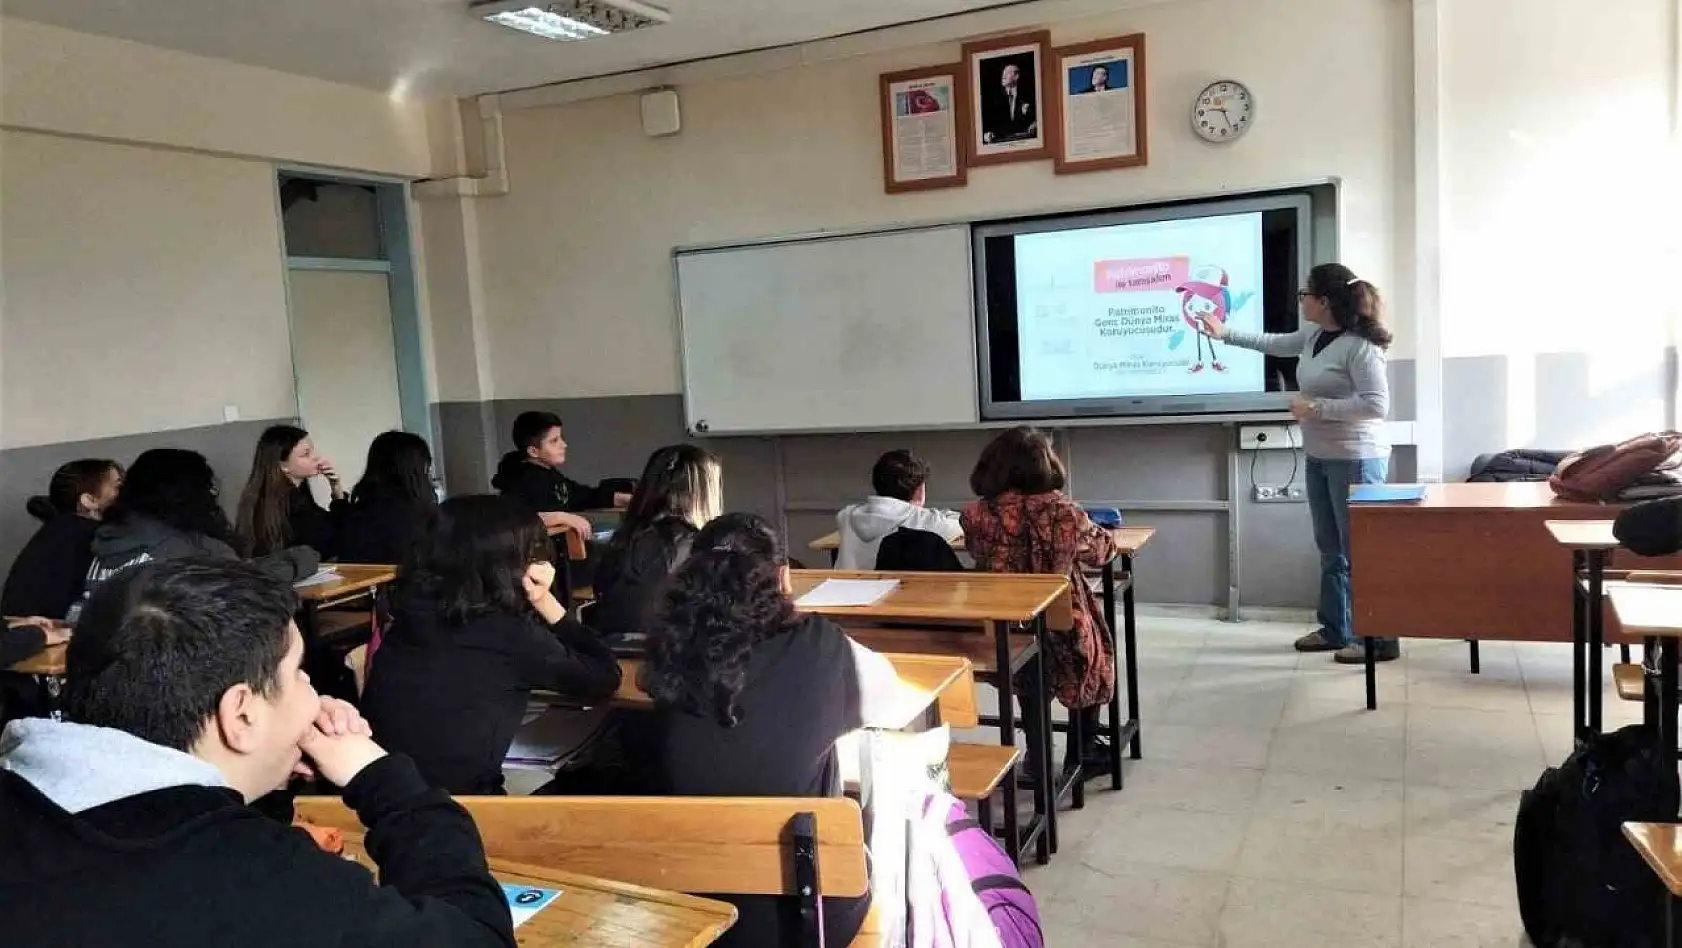 Bergama'nın kültürel mirası okul okul gezilerek anlatılıyor